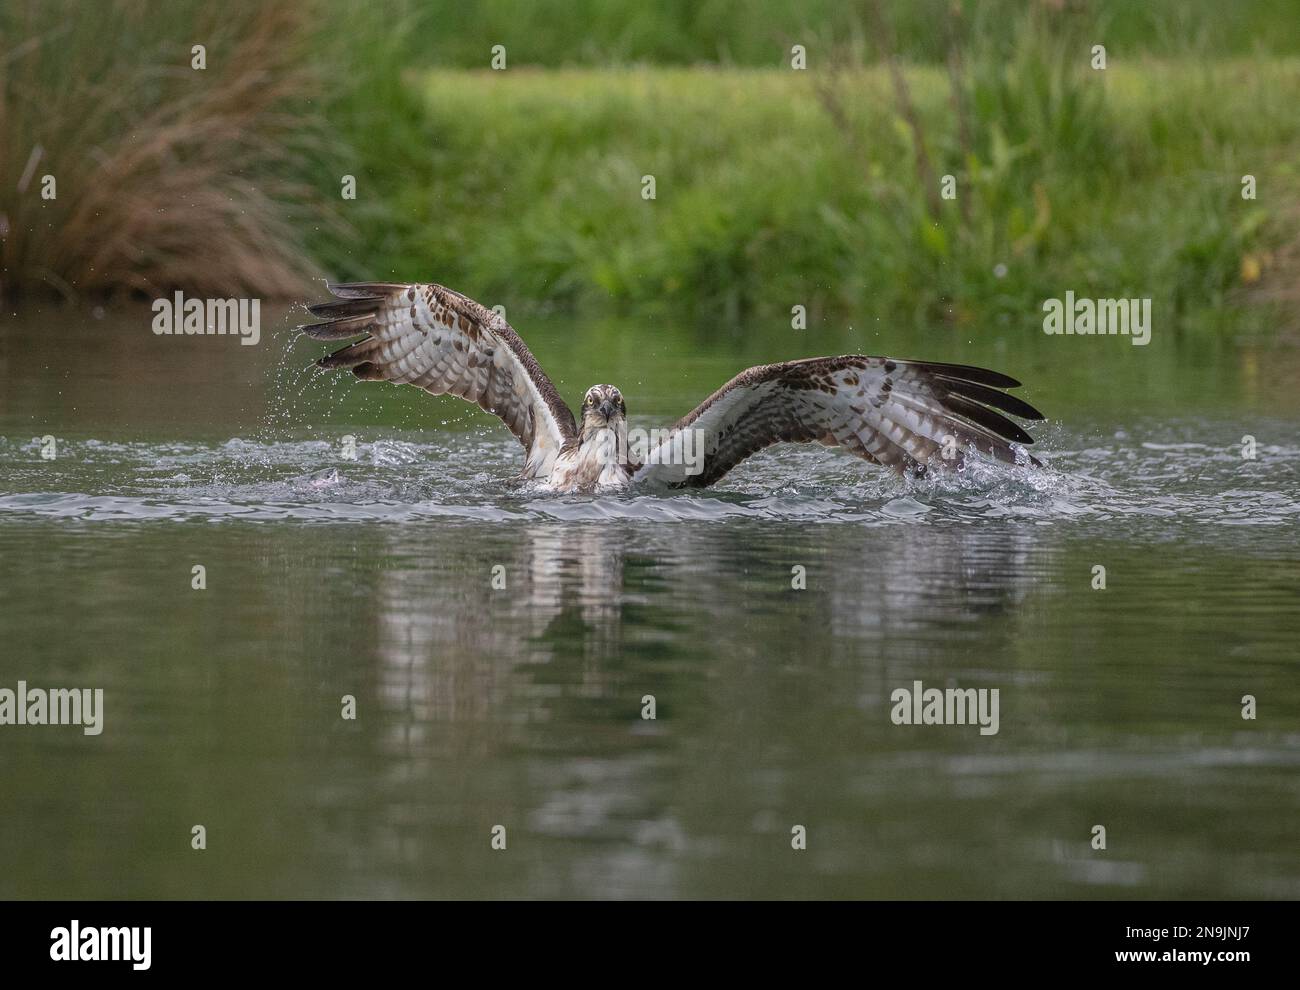 Plan d'action d'un Osprey (Pandion haliatus) à moitié submergé . les ailes s'étirent, essayant de se soulever de l'eau avec une grosse truite . Rutland, Royaume-Uni Banque D'Images